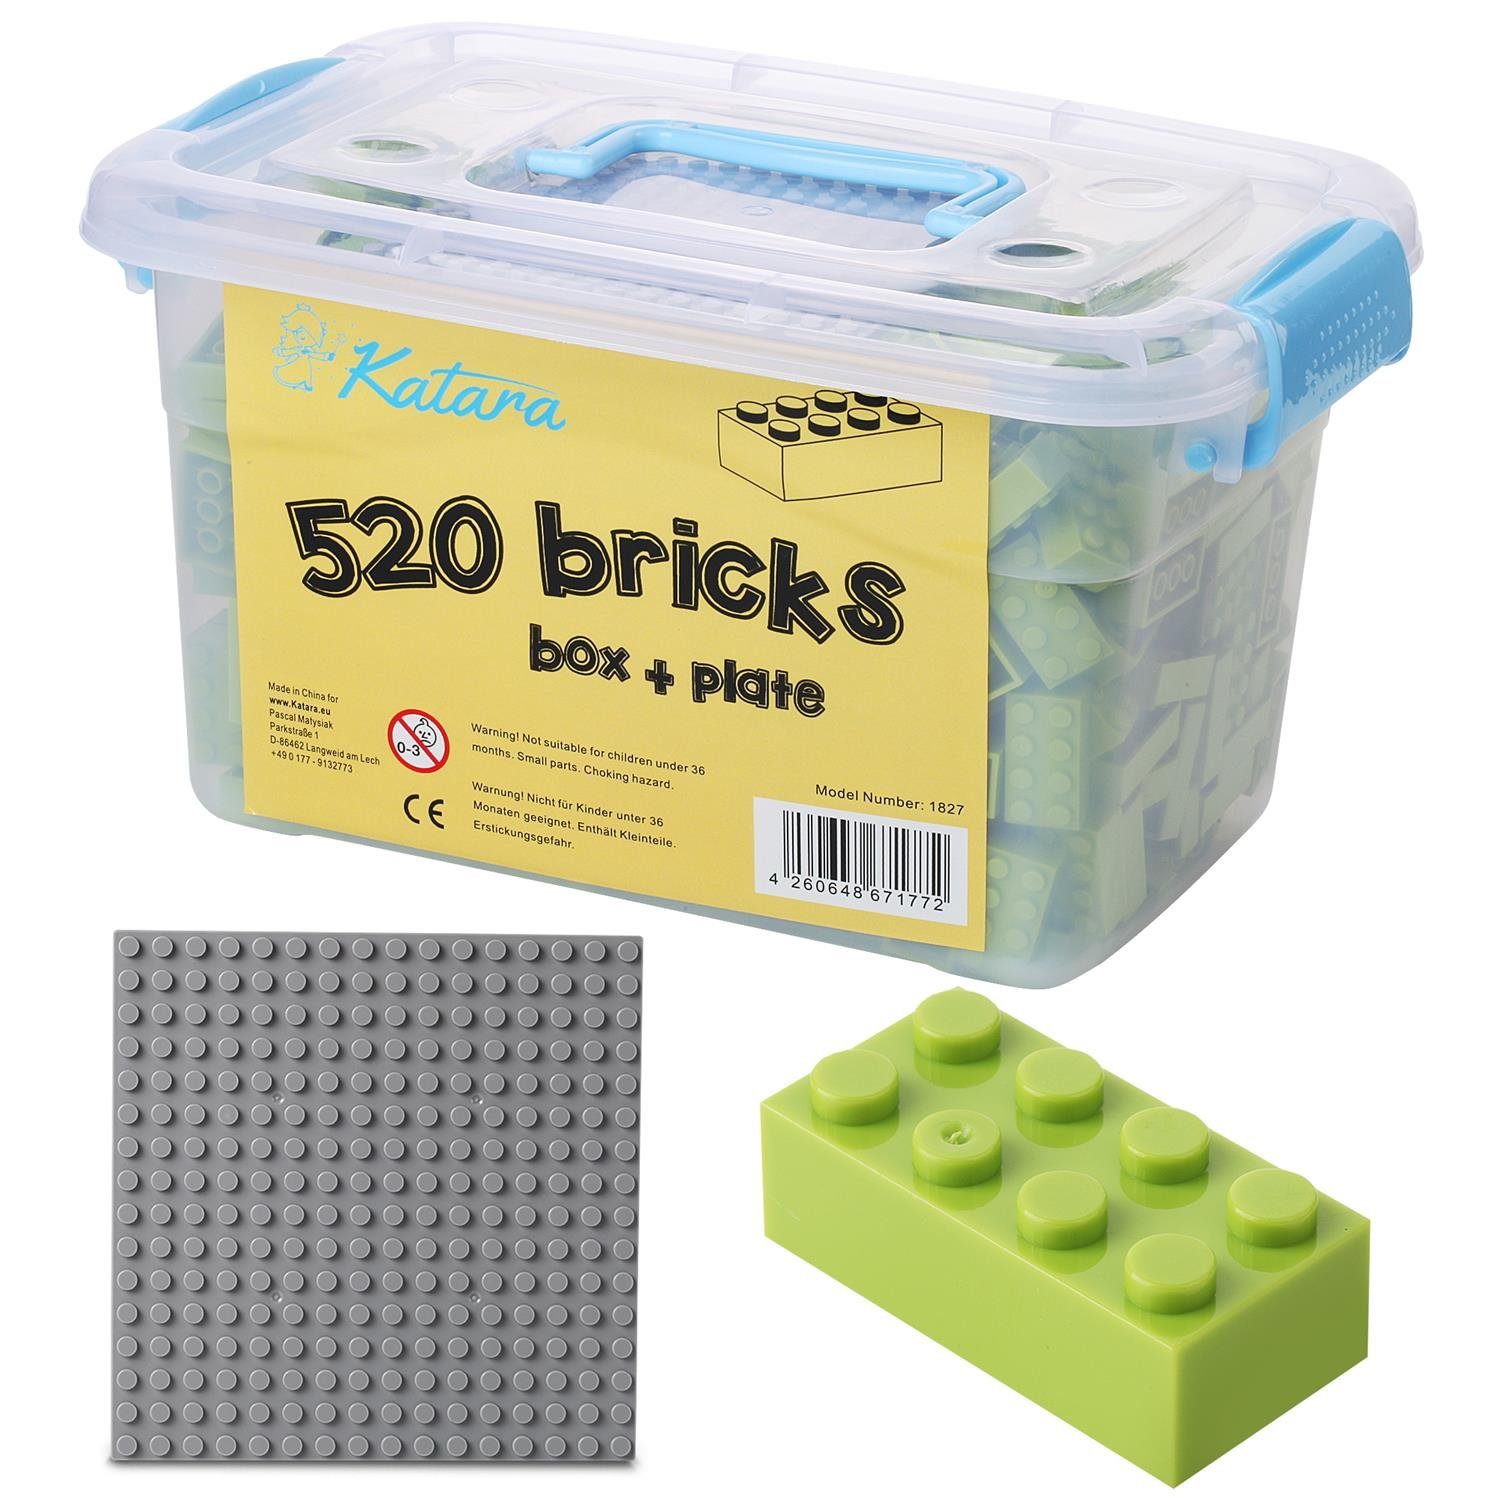 Katara Konstruktionsspielsteine Bausteine Box-Set mit 520 Steinen + Platte + Box, (3er Set), Kompatibel zu allen Anderen Herstellern - verschiedene Farben hell-grün